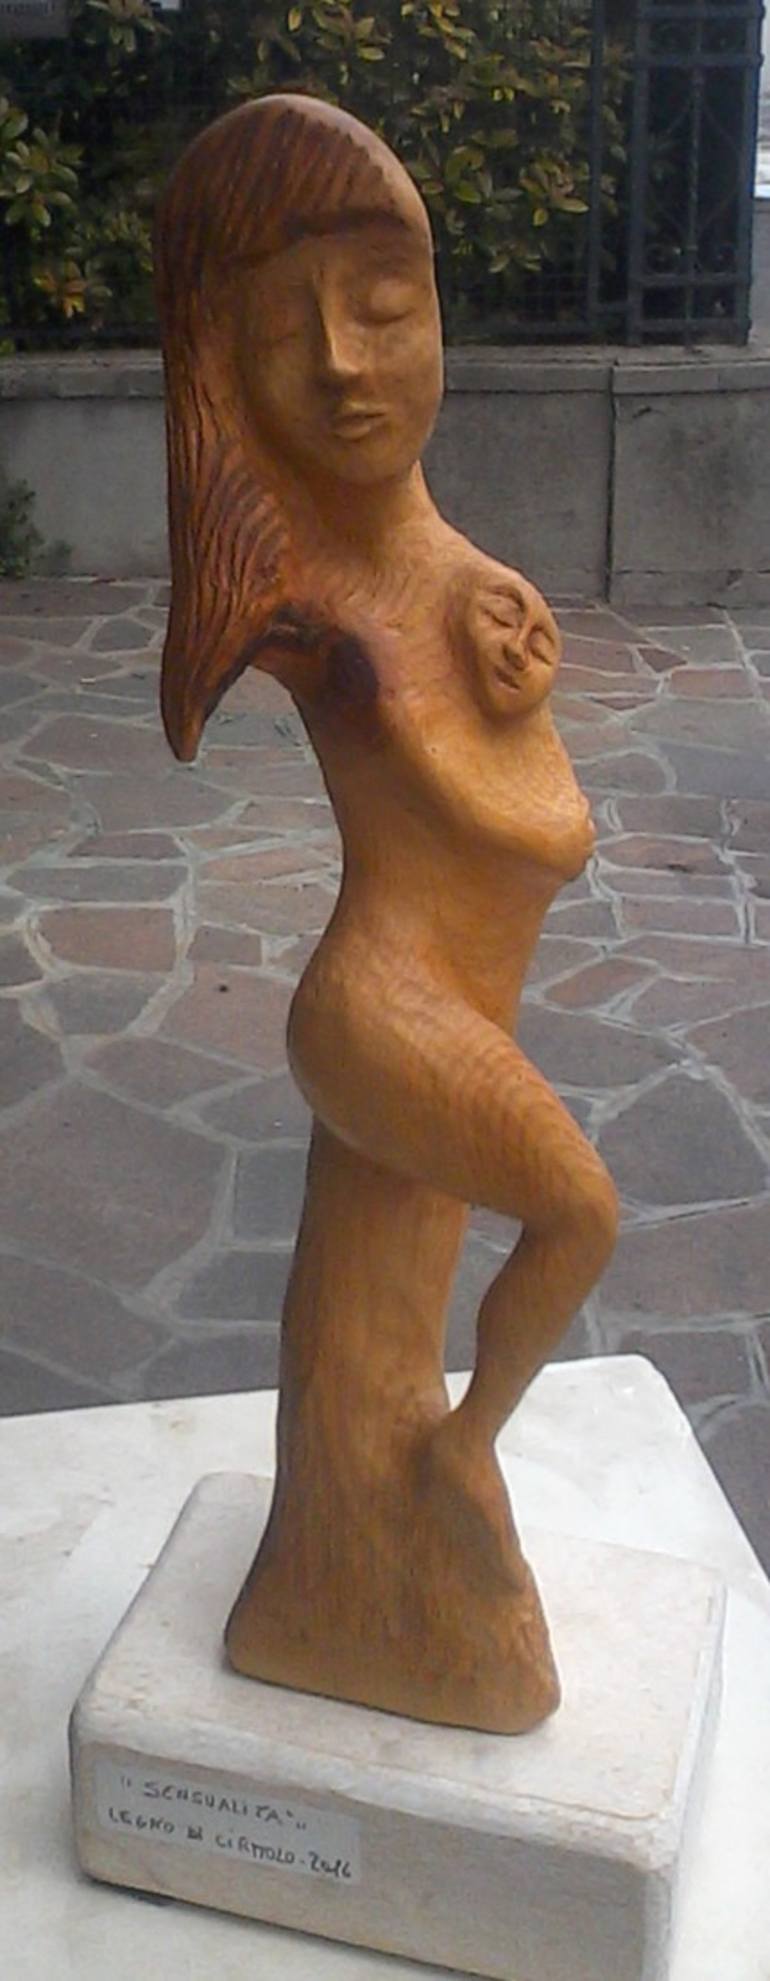 Original Erotic Sculpture by Silvano Soppelsa